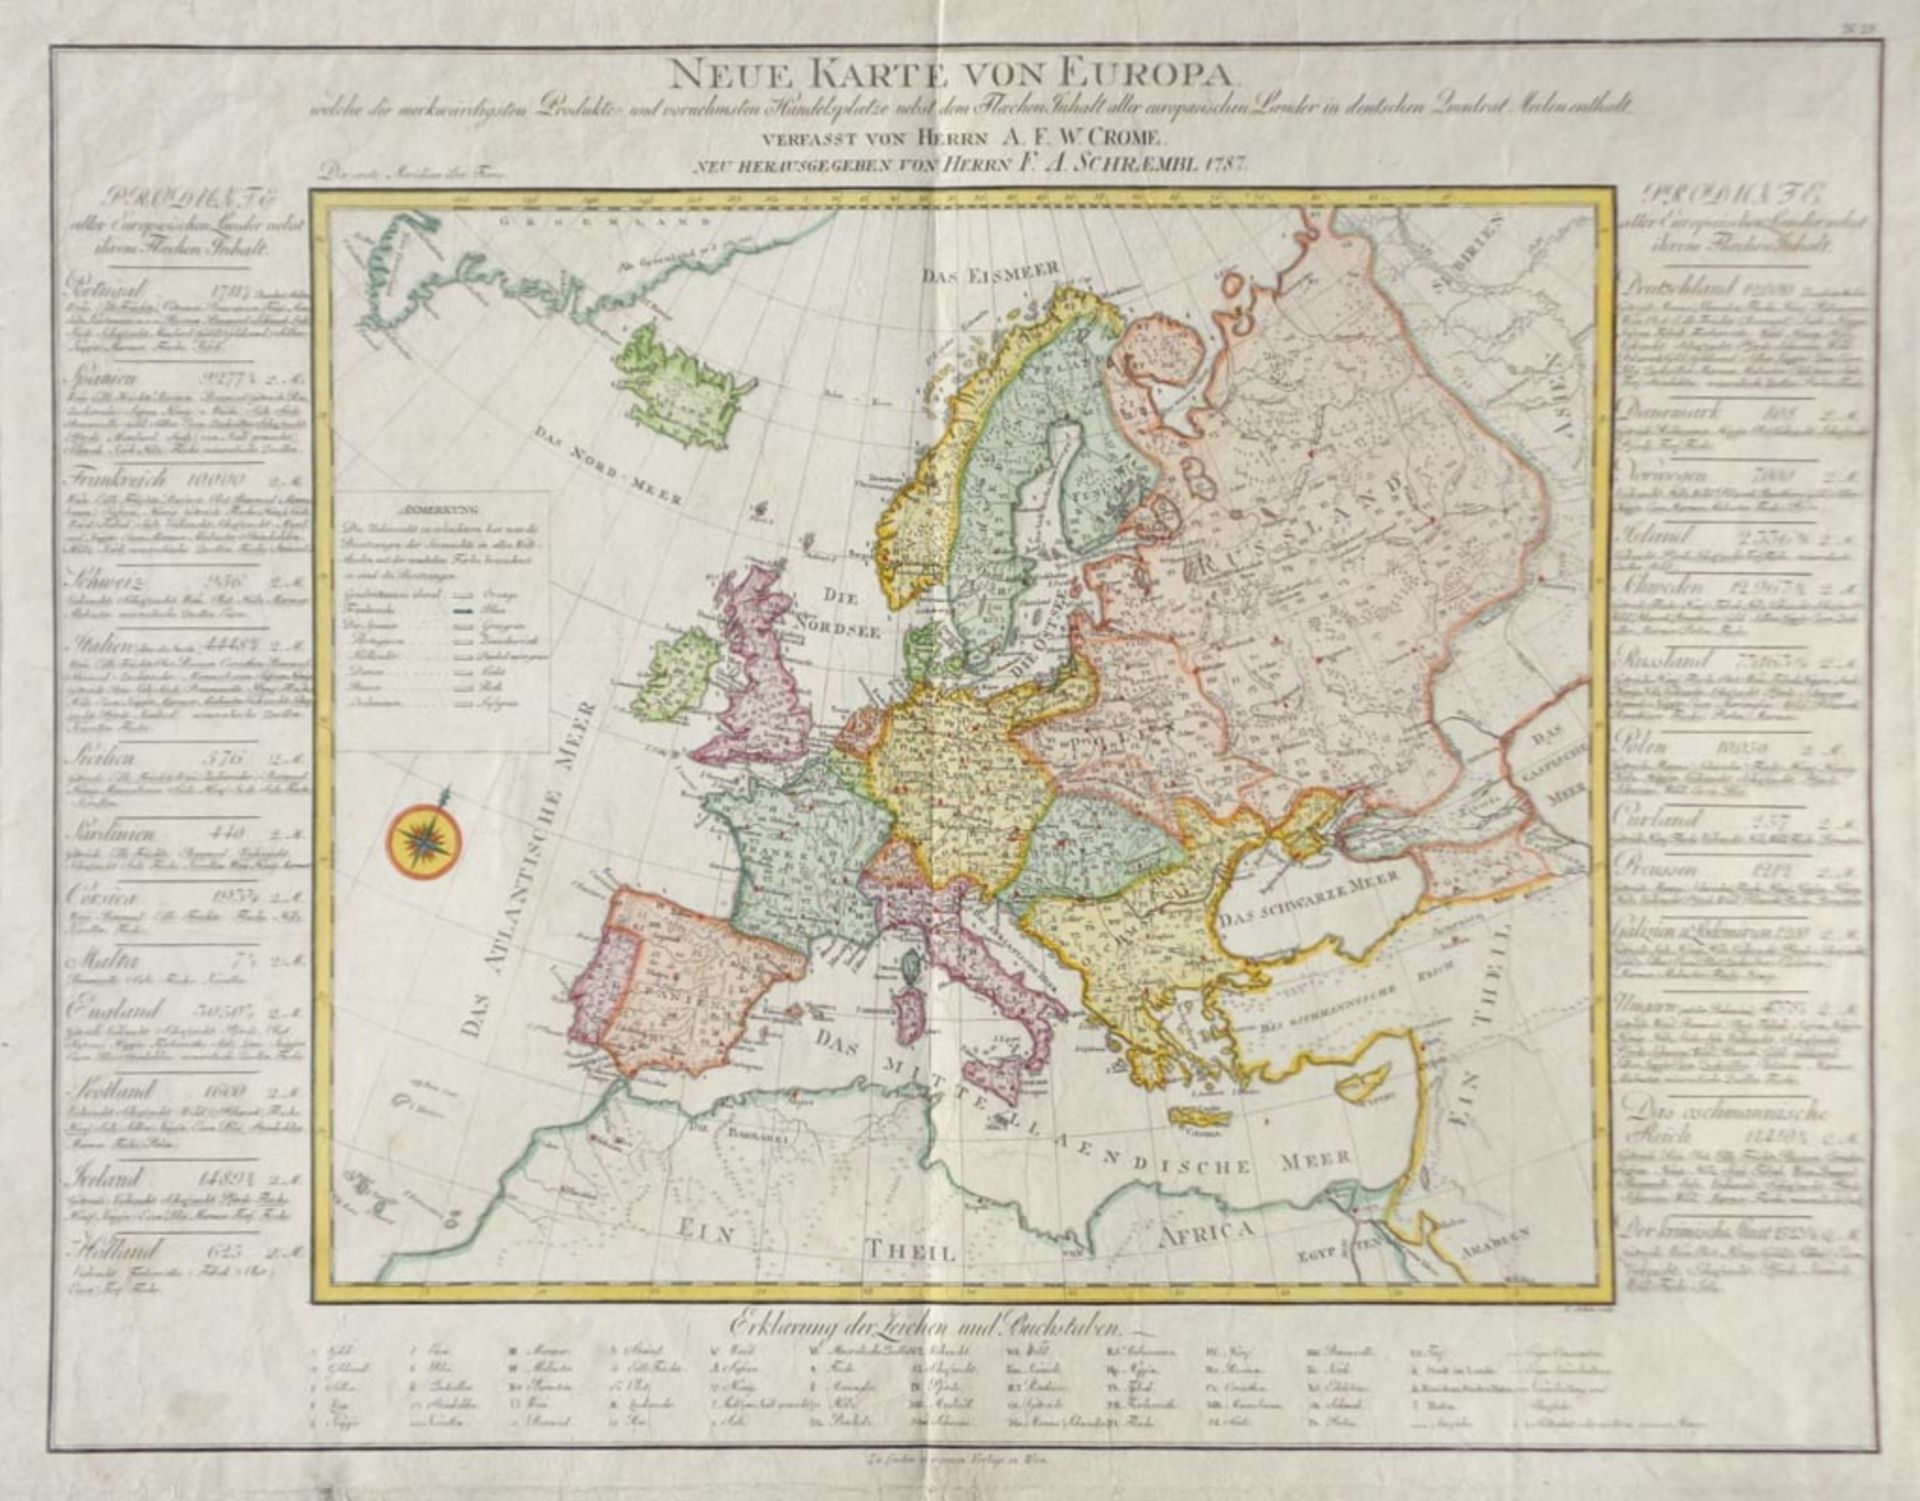 A.F.W Crome/F.A. Schraembl - Neue Karte von Europa …, 1787